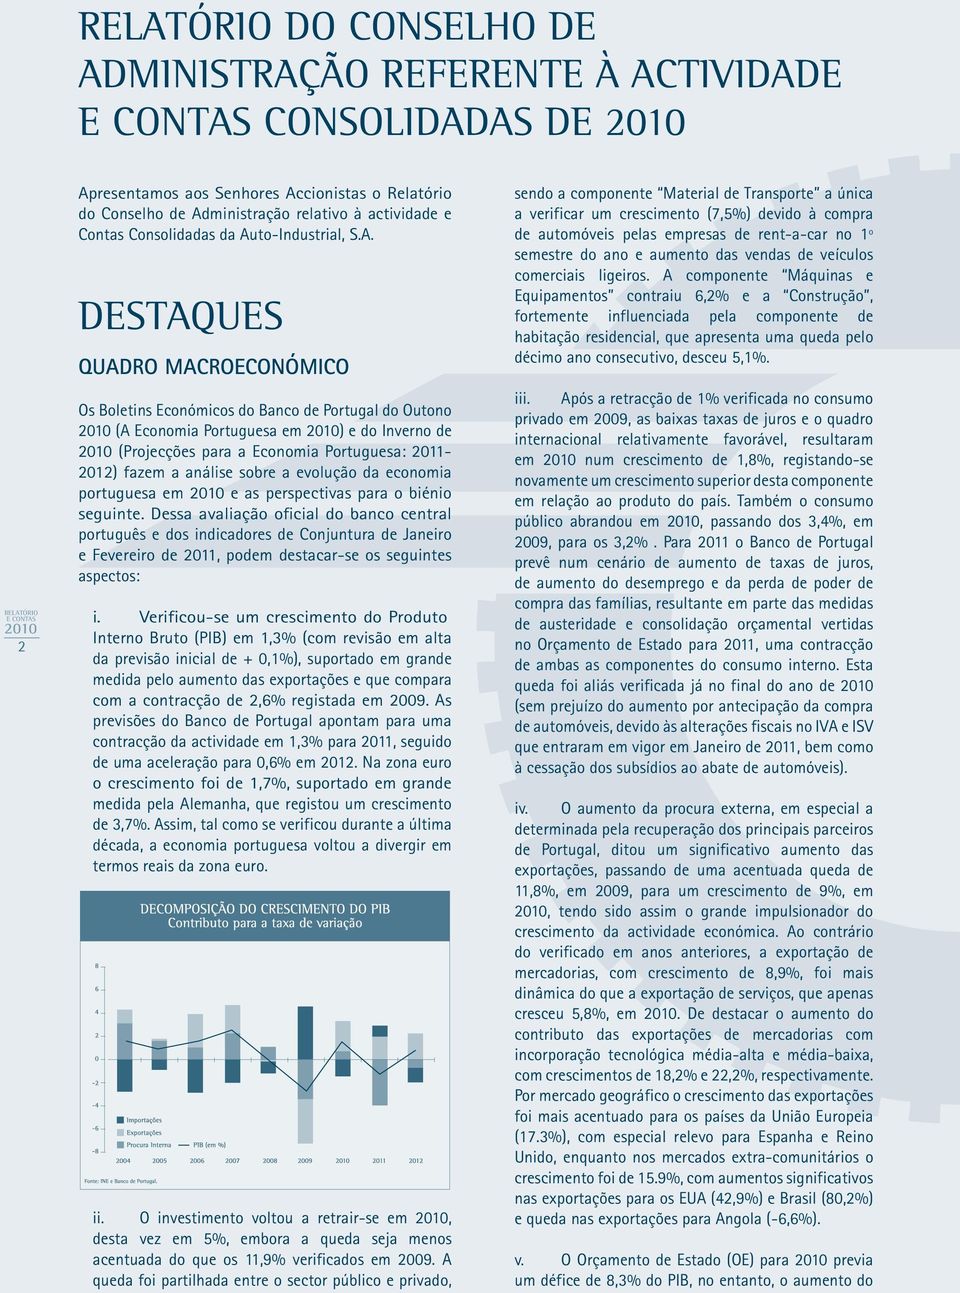 2011-2012) fazem a análise sobre a evolução da economia portuguesa em e as perspectivas para o biénio seguinte.